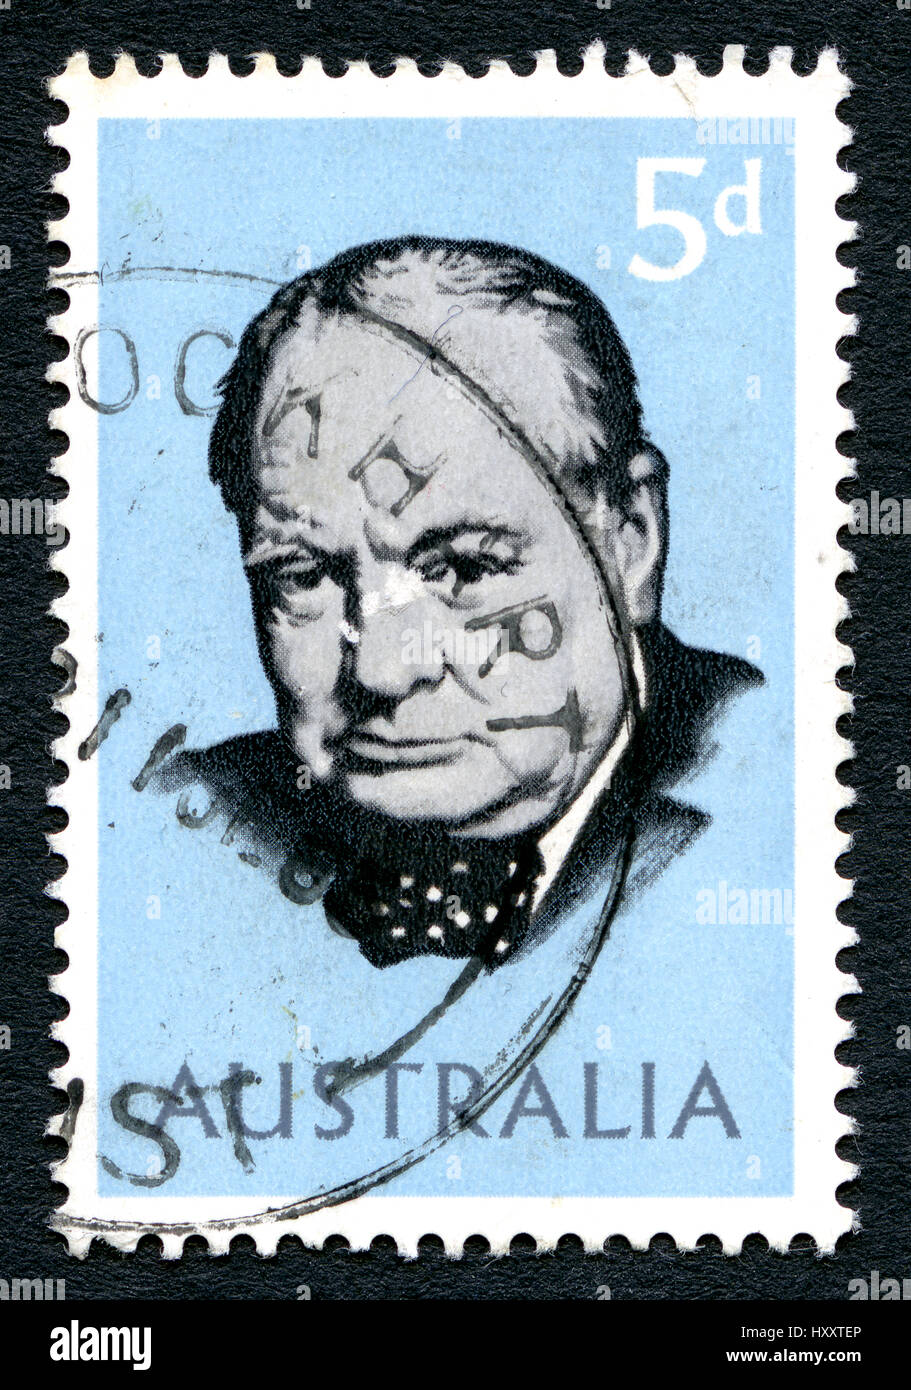 Australien - ca. 1965: Eine gebrauchte Briefmarke aus Australien, zeigt ein Porträt der ehemalige britische Premierminister Sir Winston Churchill, ca. 1965. Stockfoto